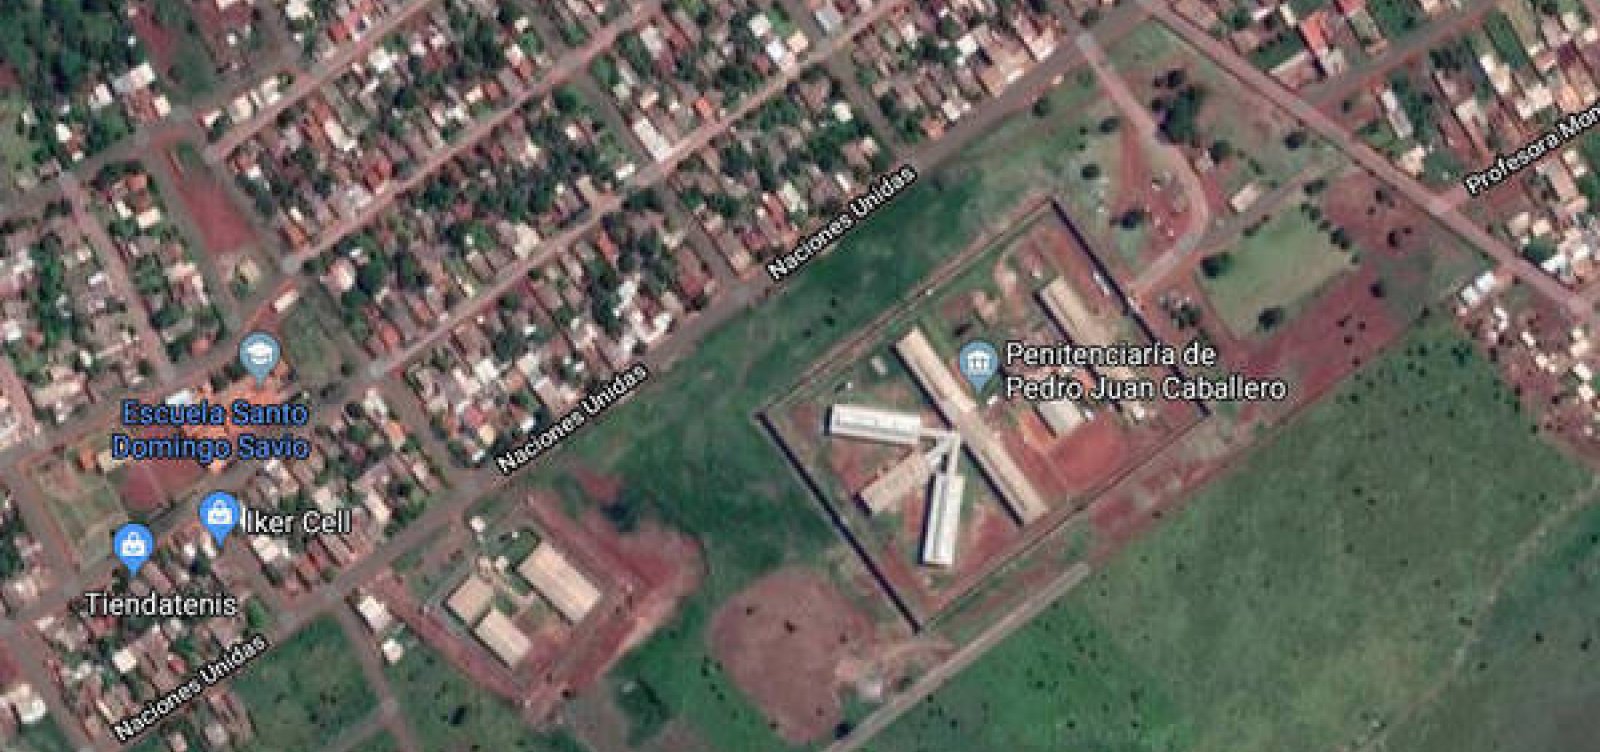 Governo brasileiro bloqueia fronteira com Paraguai após fuga de presos